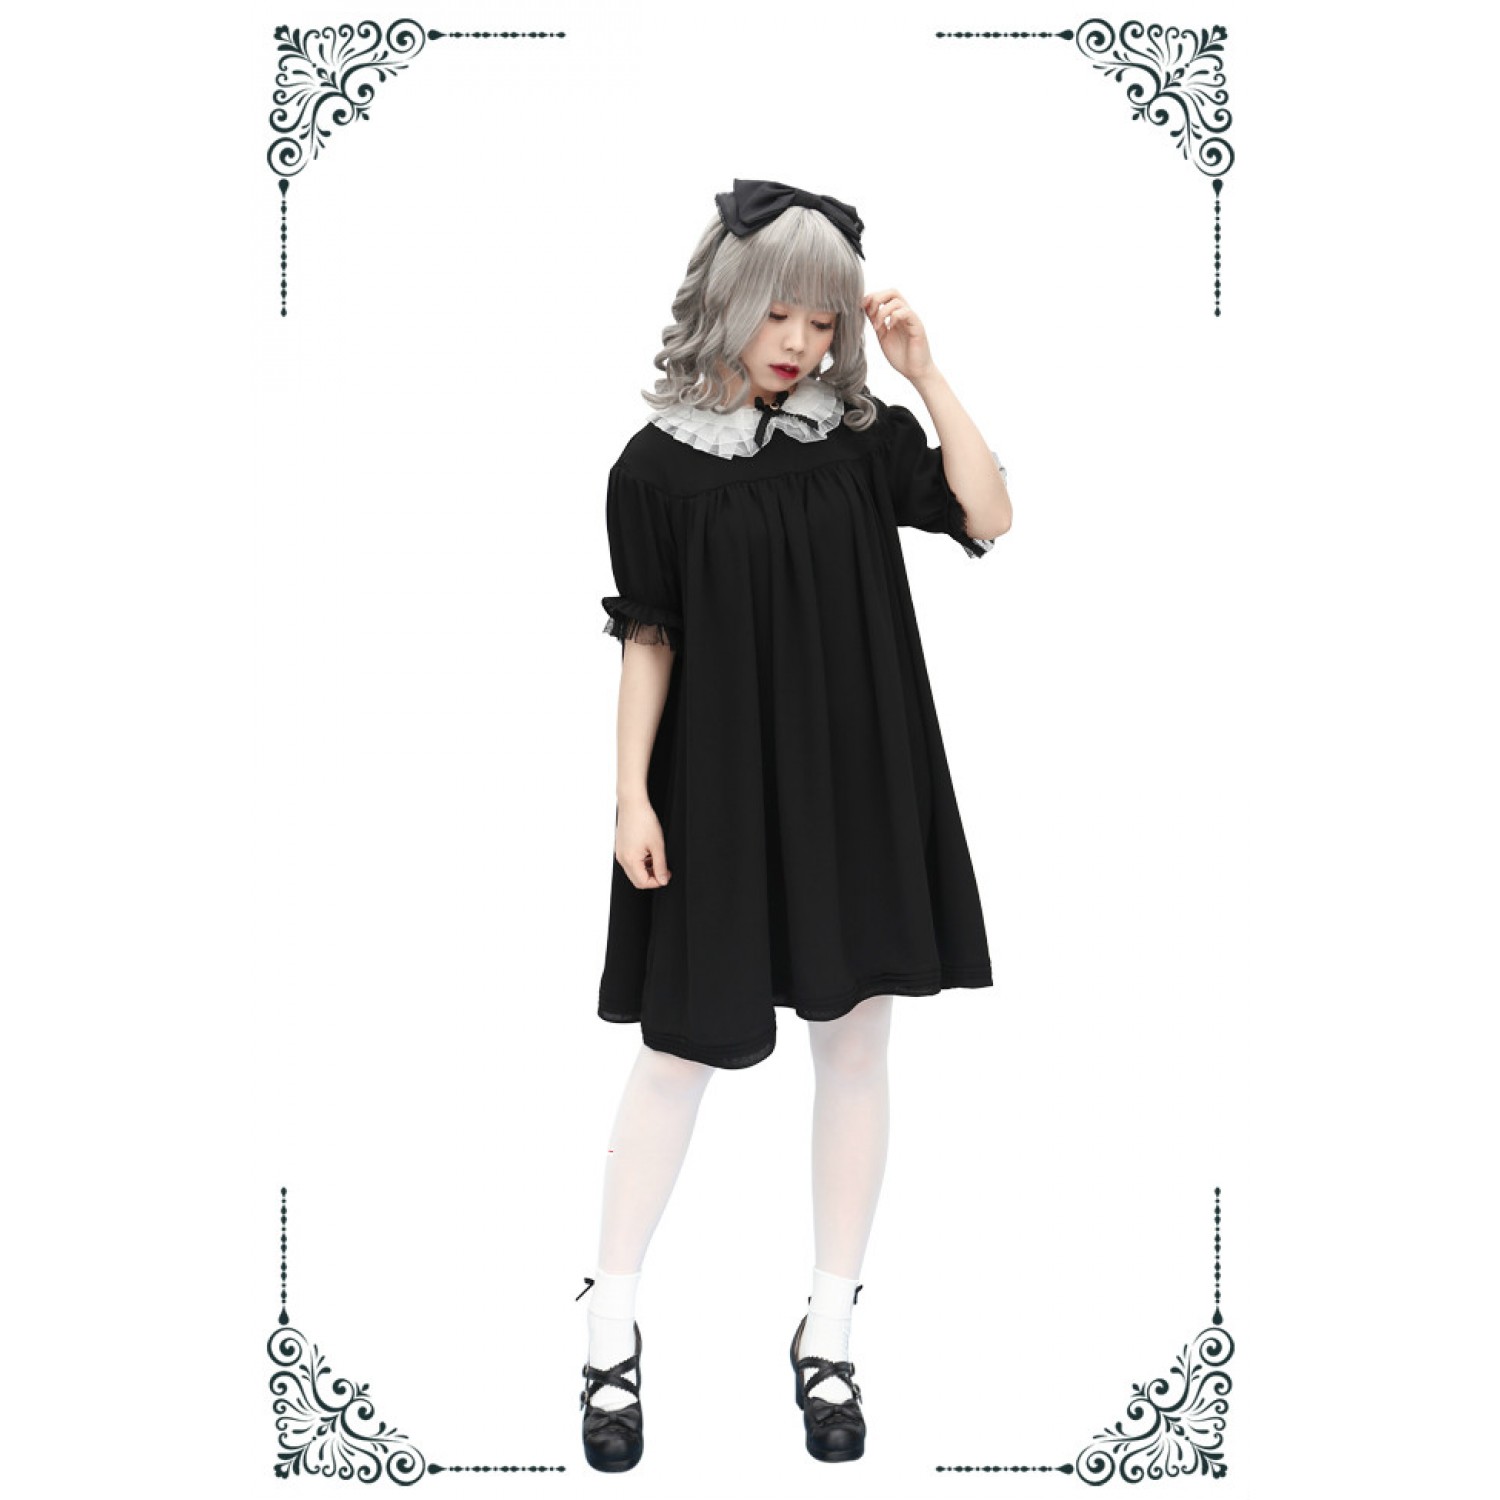 short black jumper dress